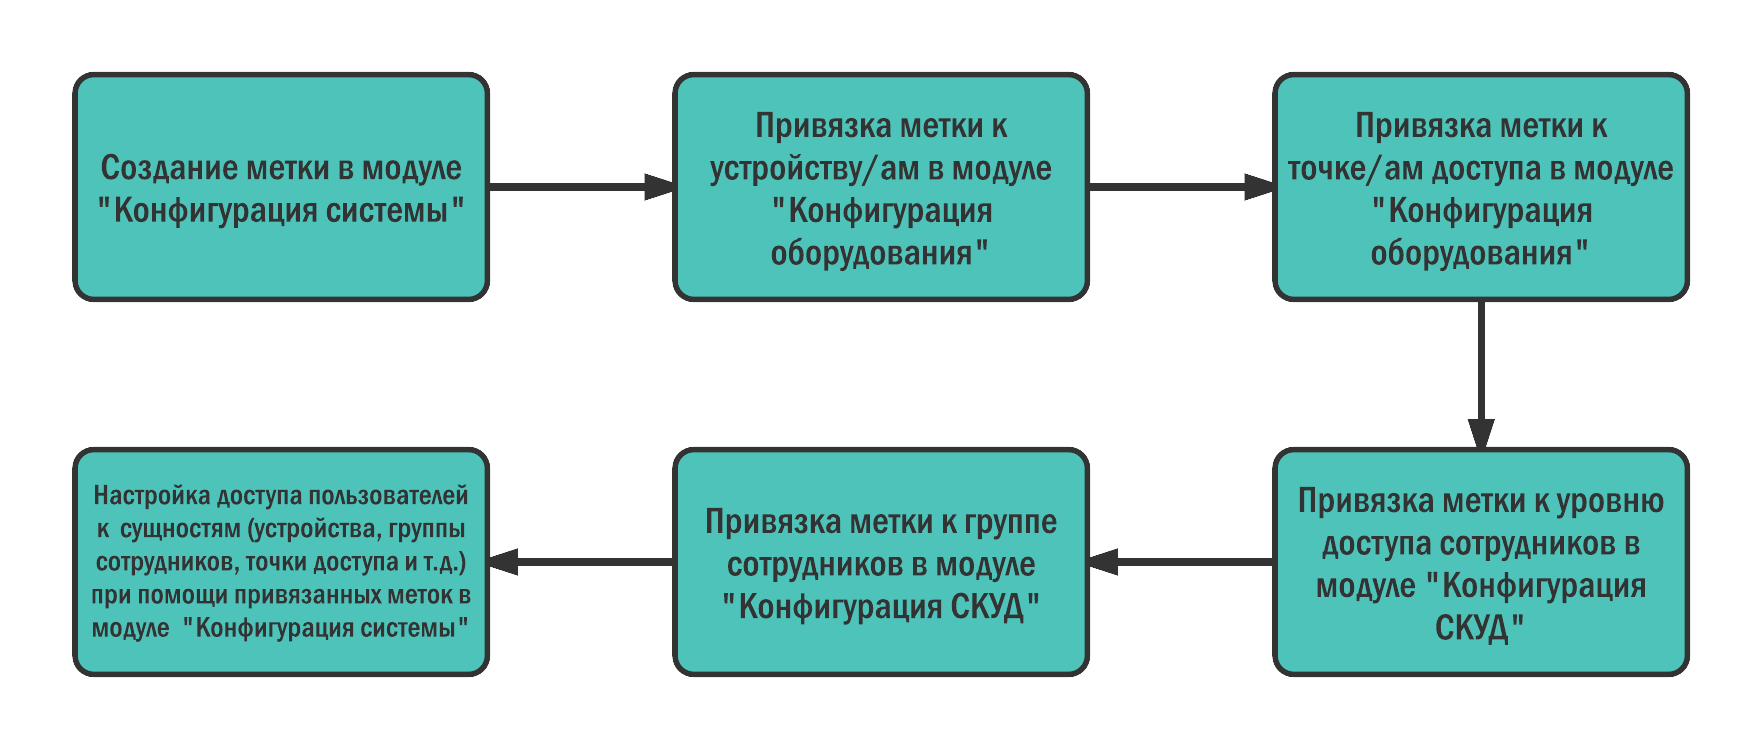 Рисунок 5 - Схема процесса управления доступом через метки